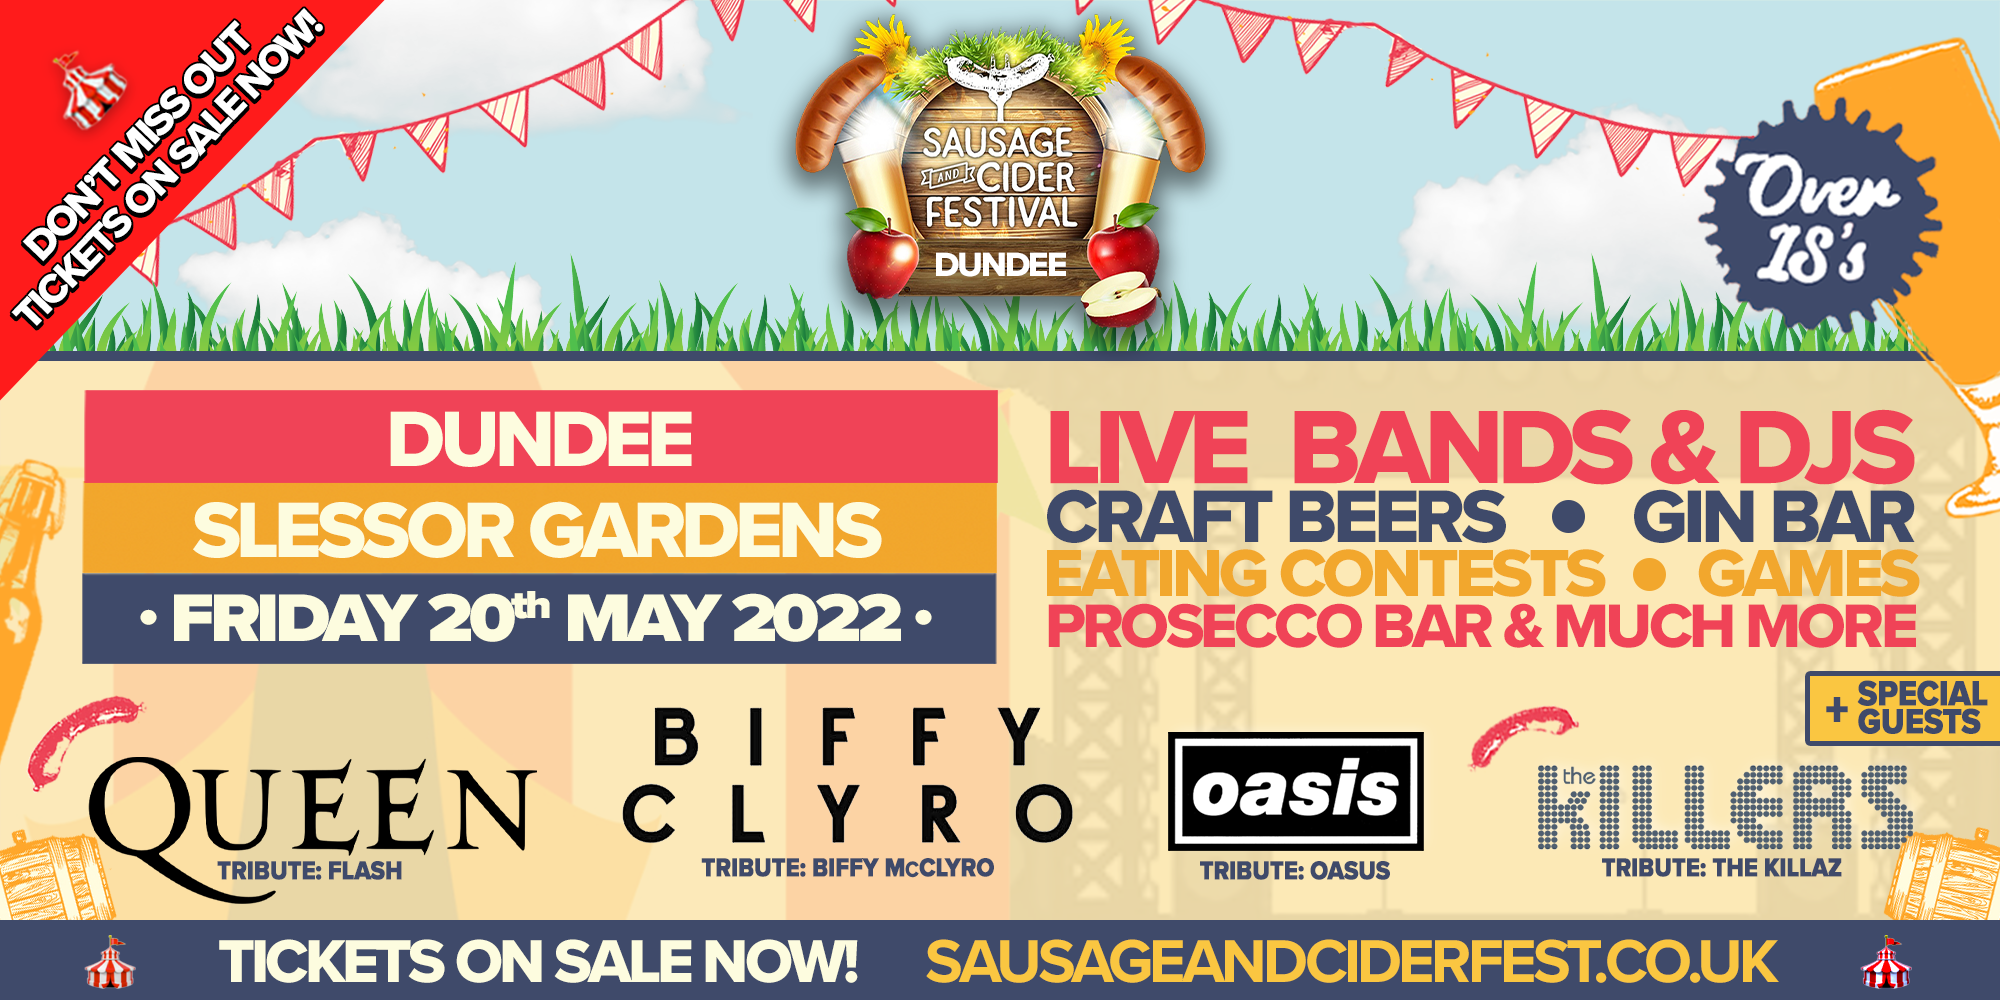 Sausage & Cider Fest - Dundee 2022